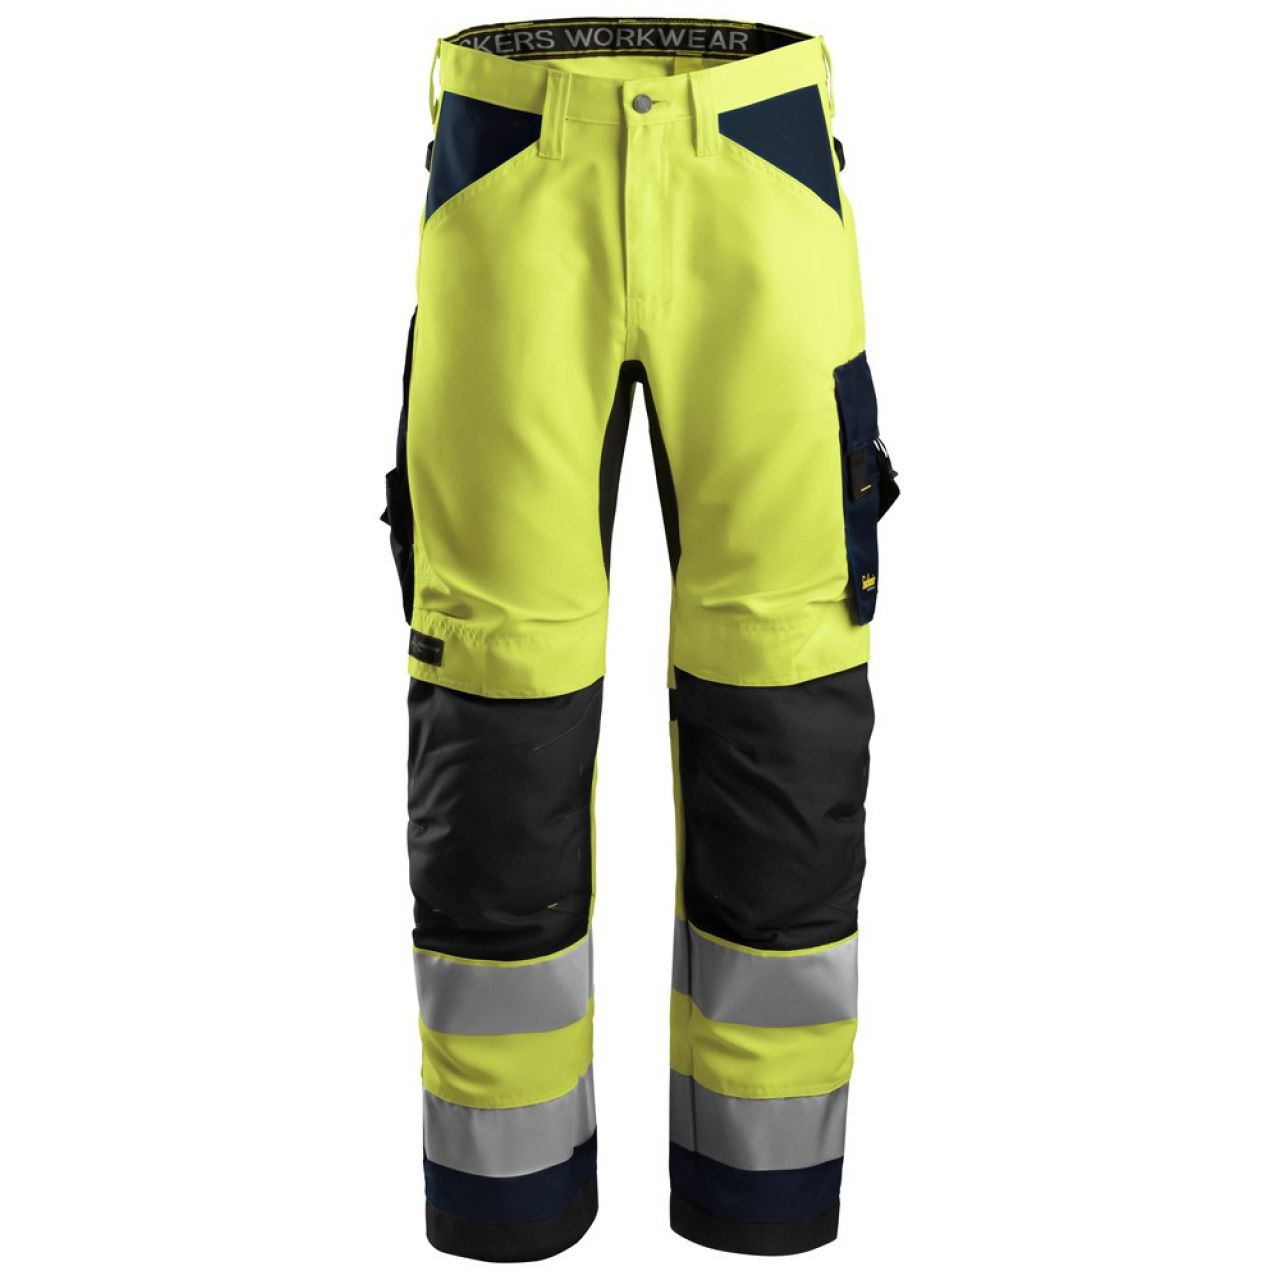 6331 Pantalones largos de trabajo de alta visibilidad clase 2 AllroundWork amarillo-azul marino talla 88